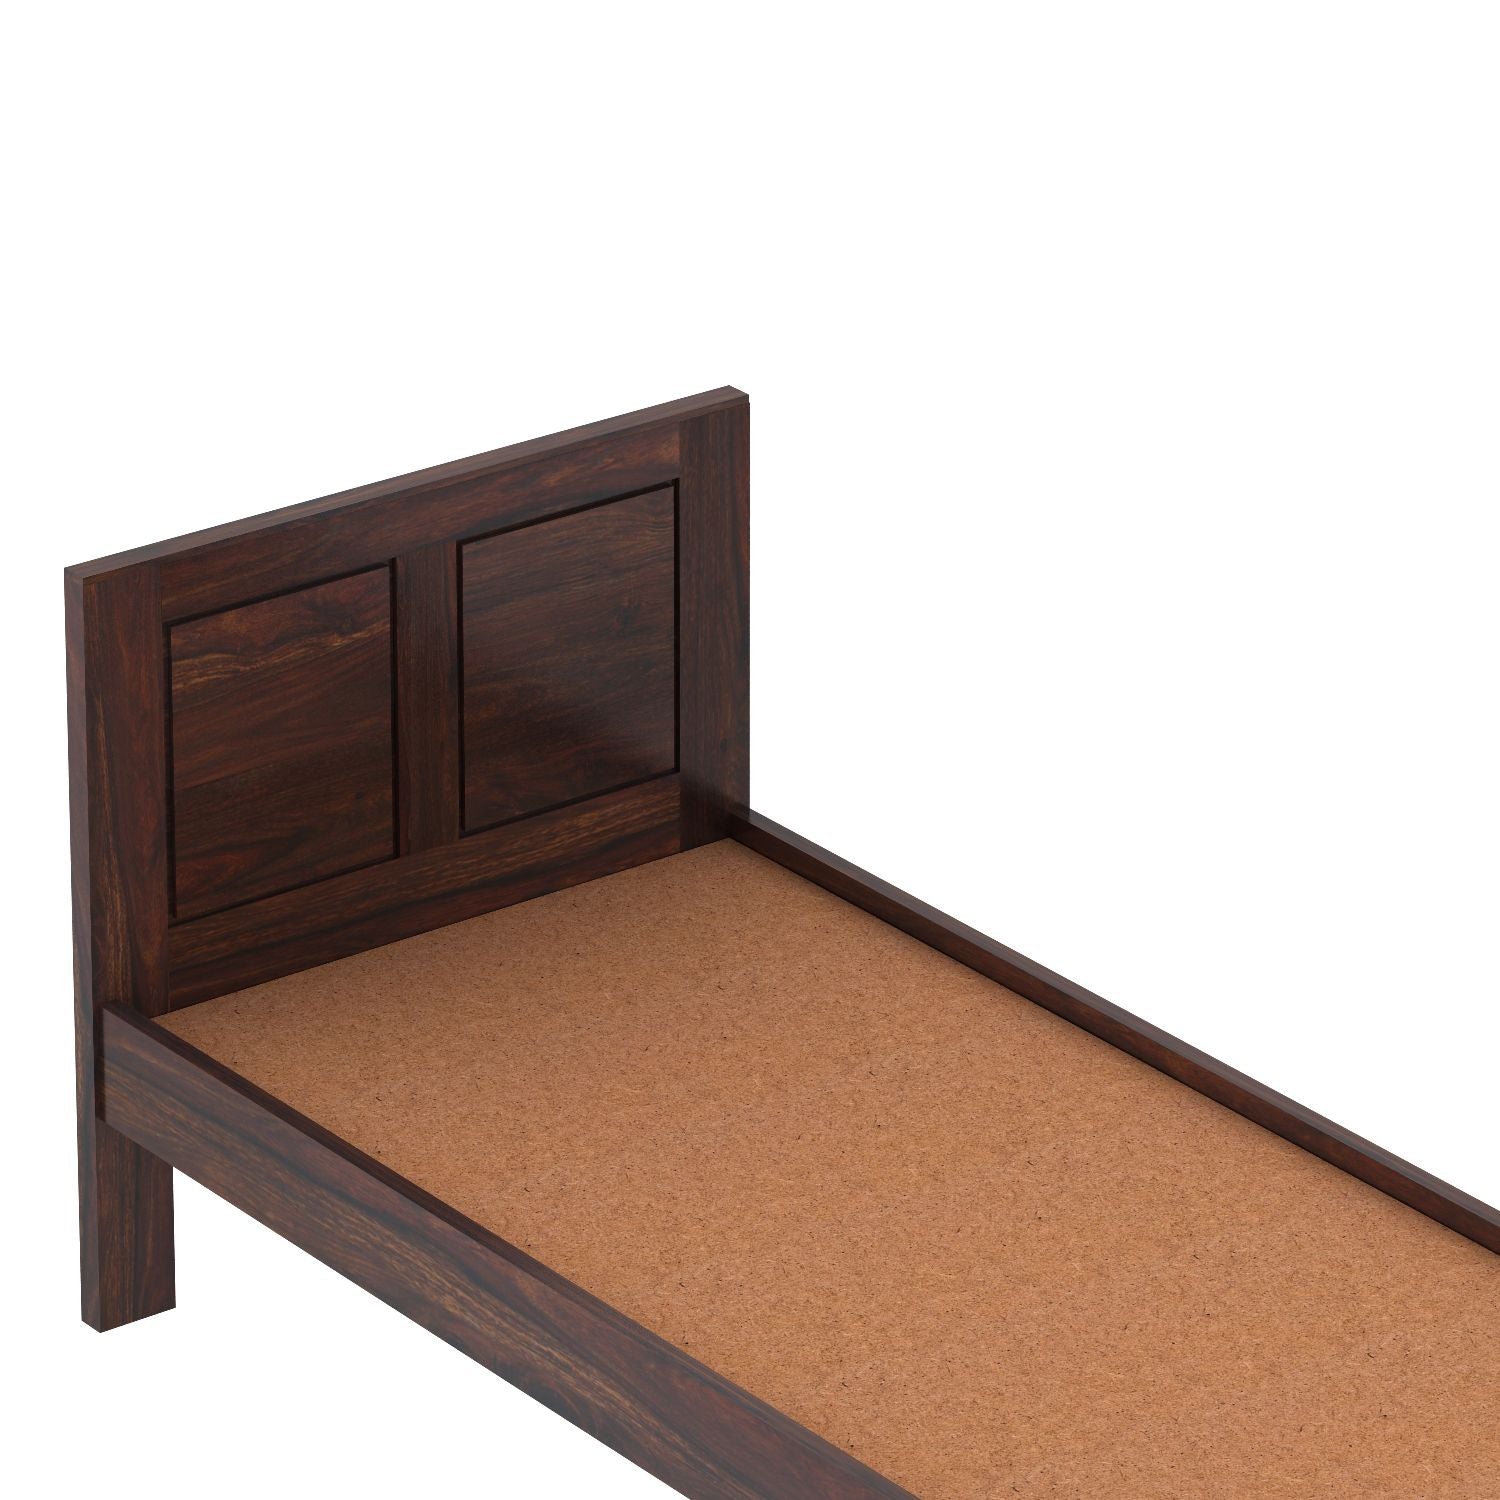 Woodwing Solid Sheesham Wood Single Bed Without Storage (Walnut Finish)